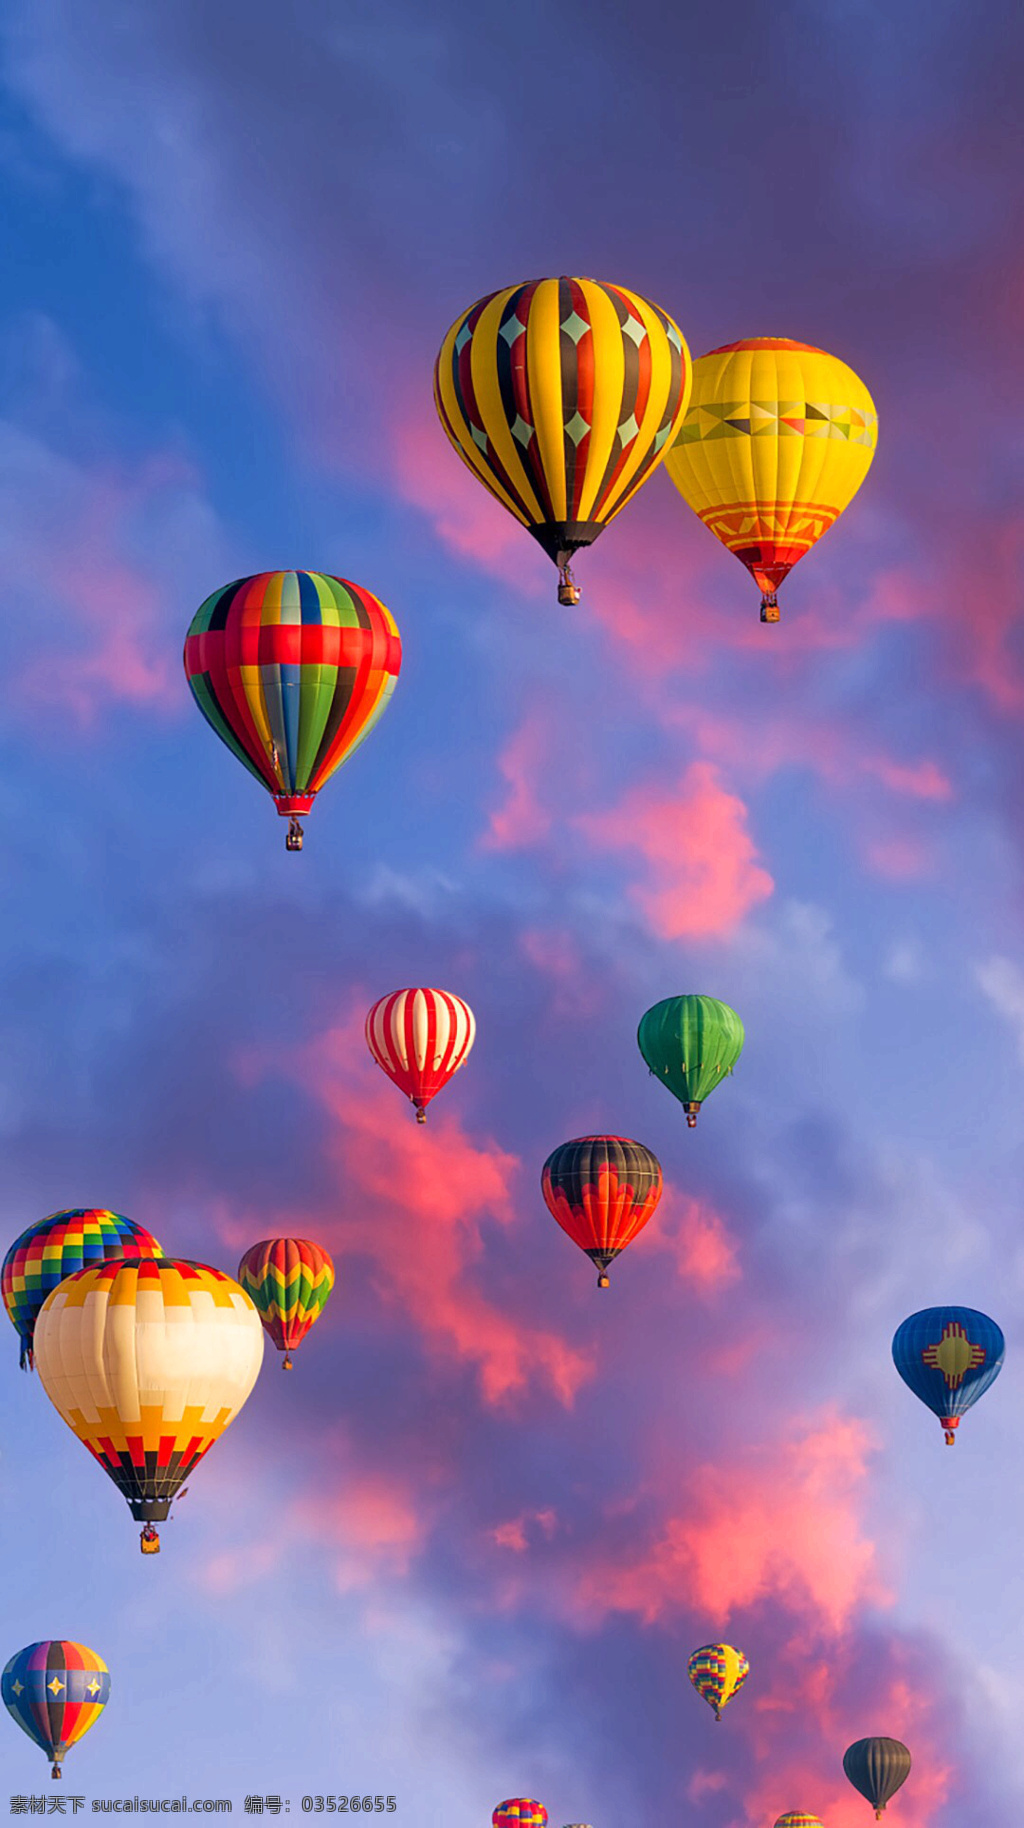 土耳其 热气球 精品 稀有 高清 手机 壁纸 多彩 壮观 各类 精选 图 自然景观 山水风景